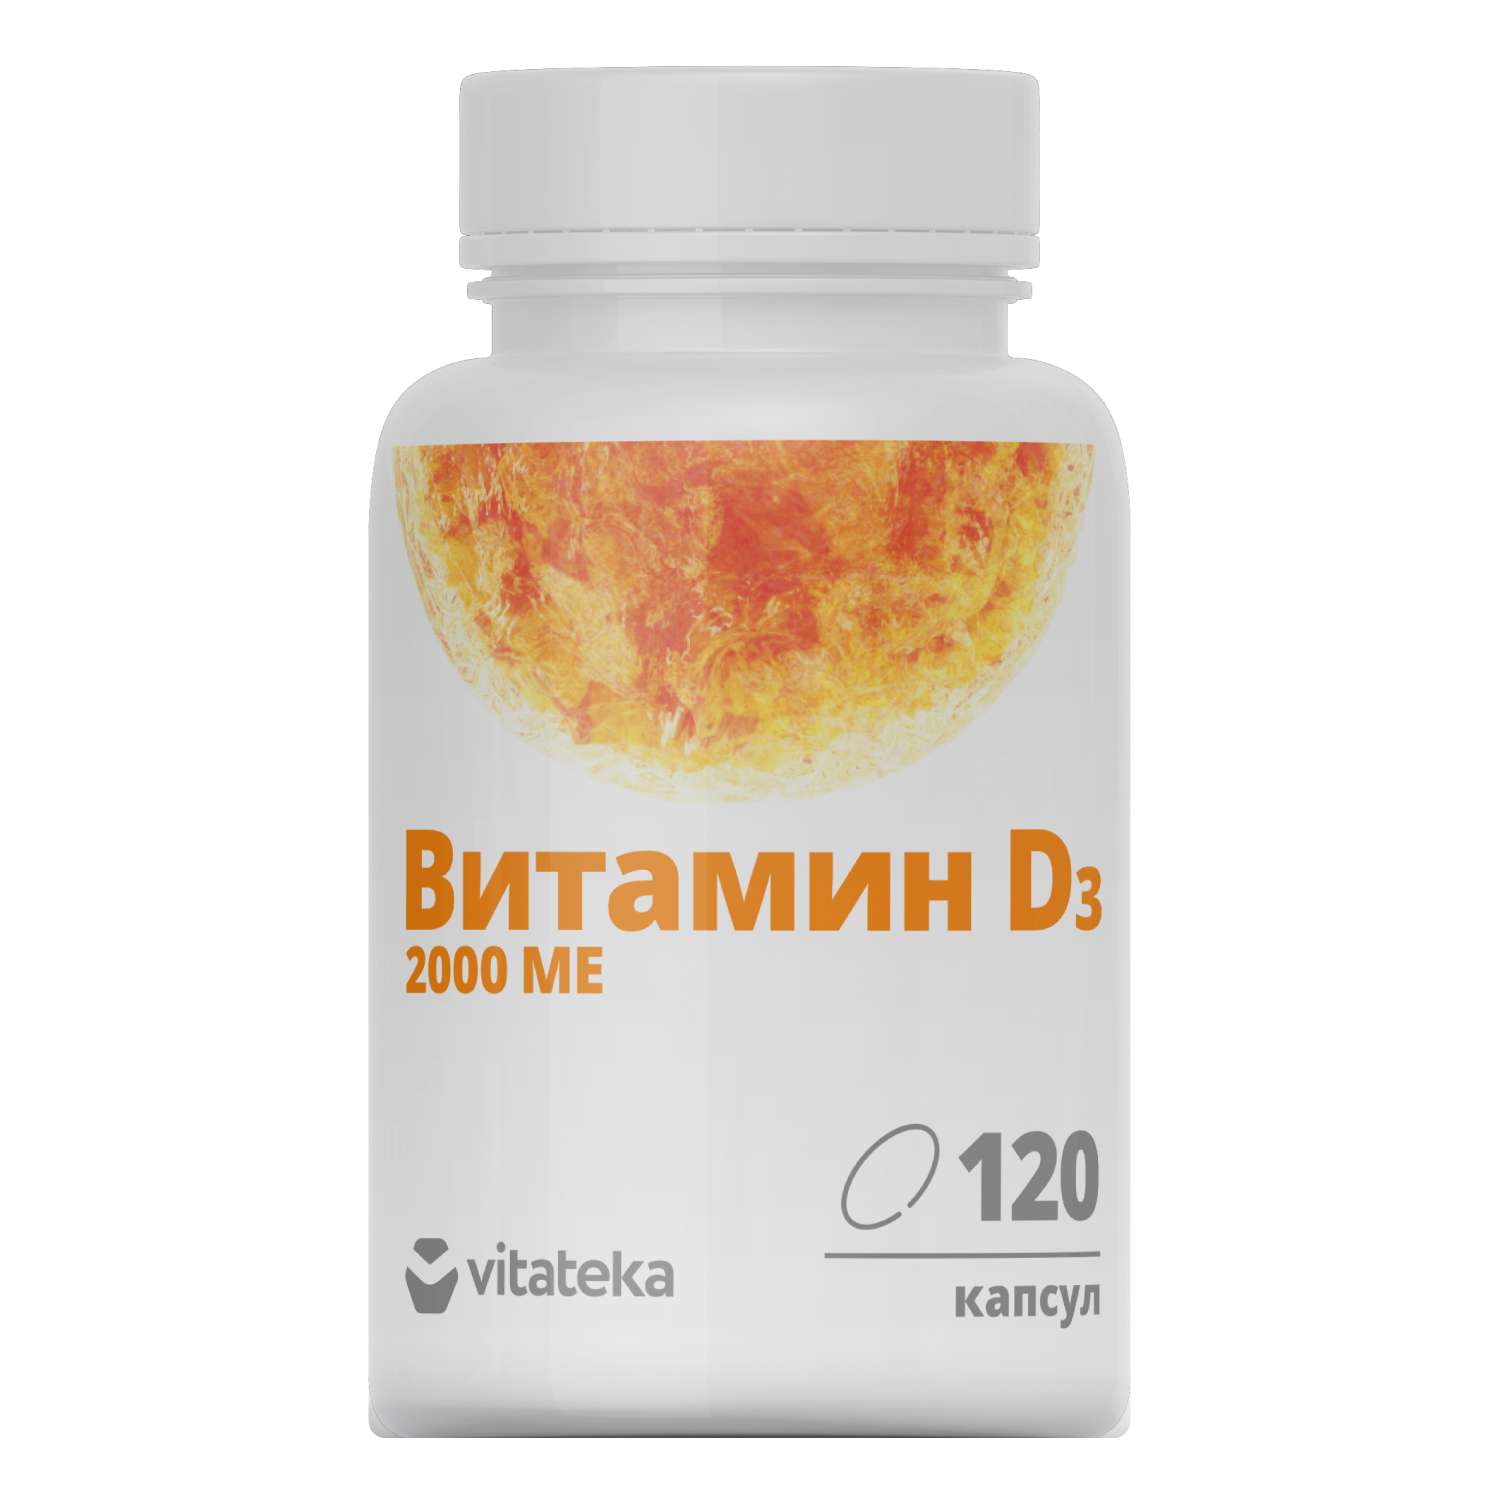 Биологически активная добавка Витатека Витамин Д3 2000МЕ 450мг*120капсул - фото 1